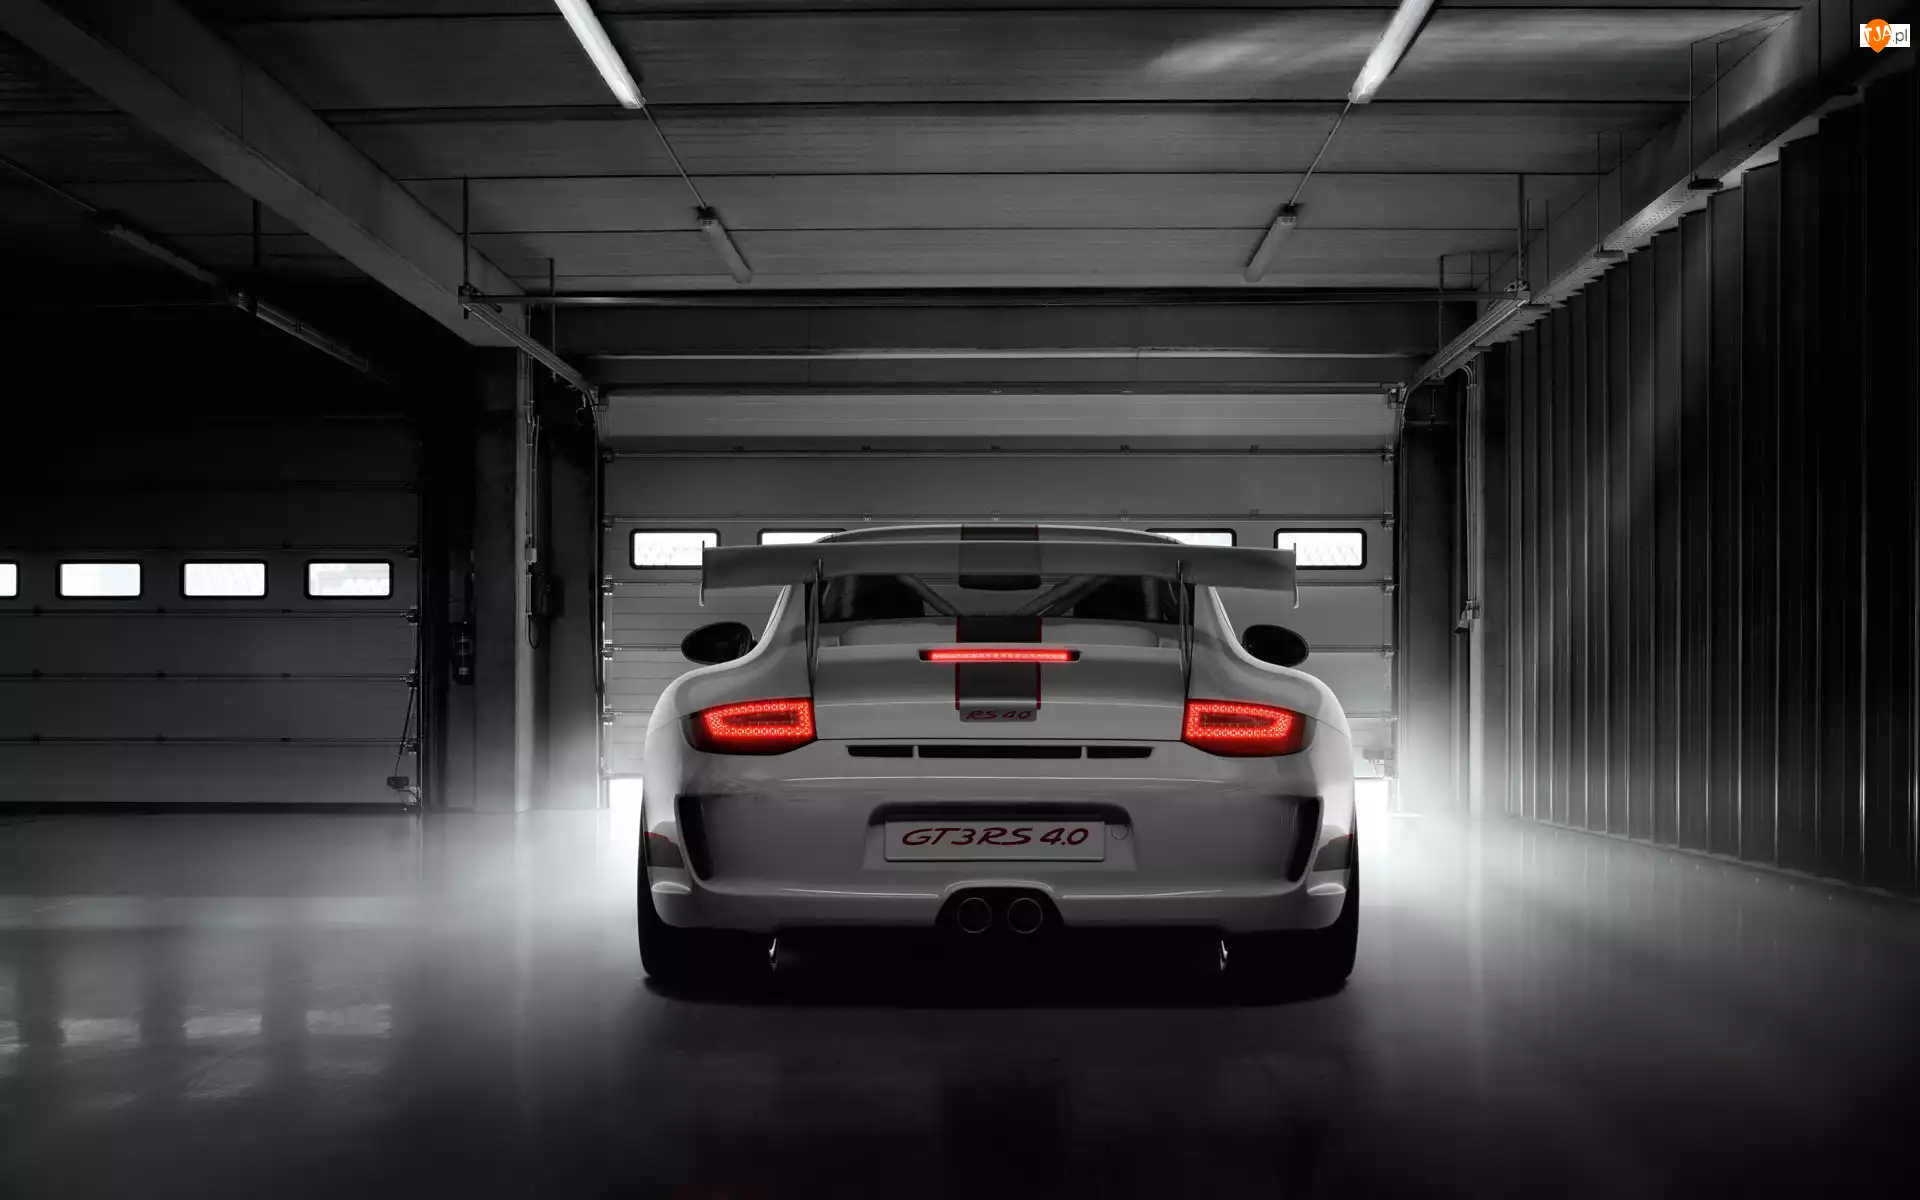 Garaż, Porsche 911 GT3 RS 4.0 Limited Edition, 2011